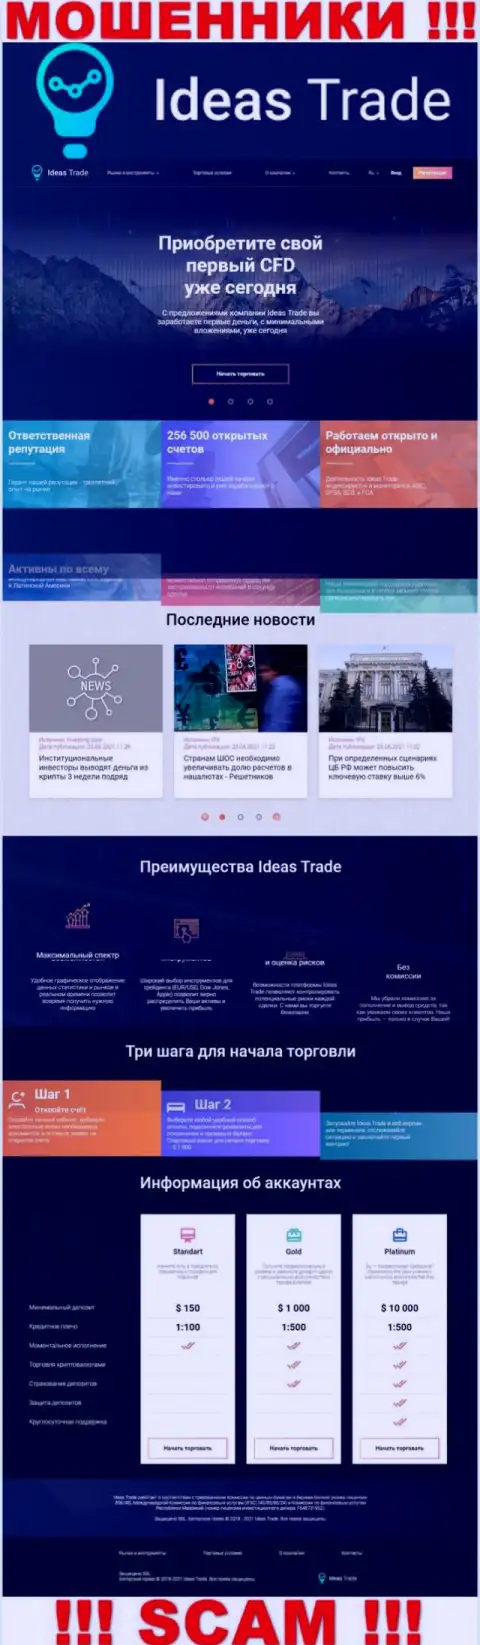 Официальный web-портал мошенников Ideas Trade